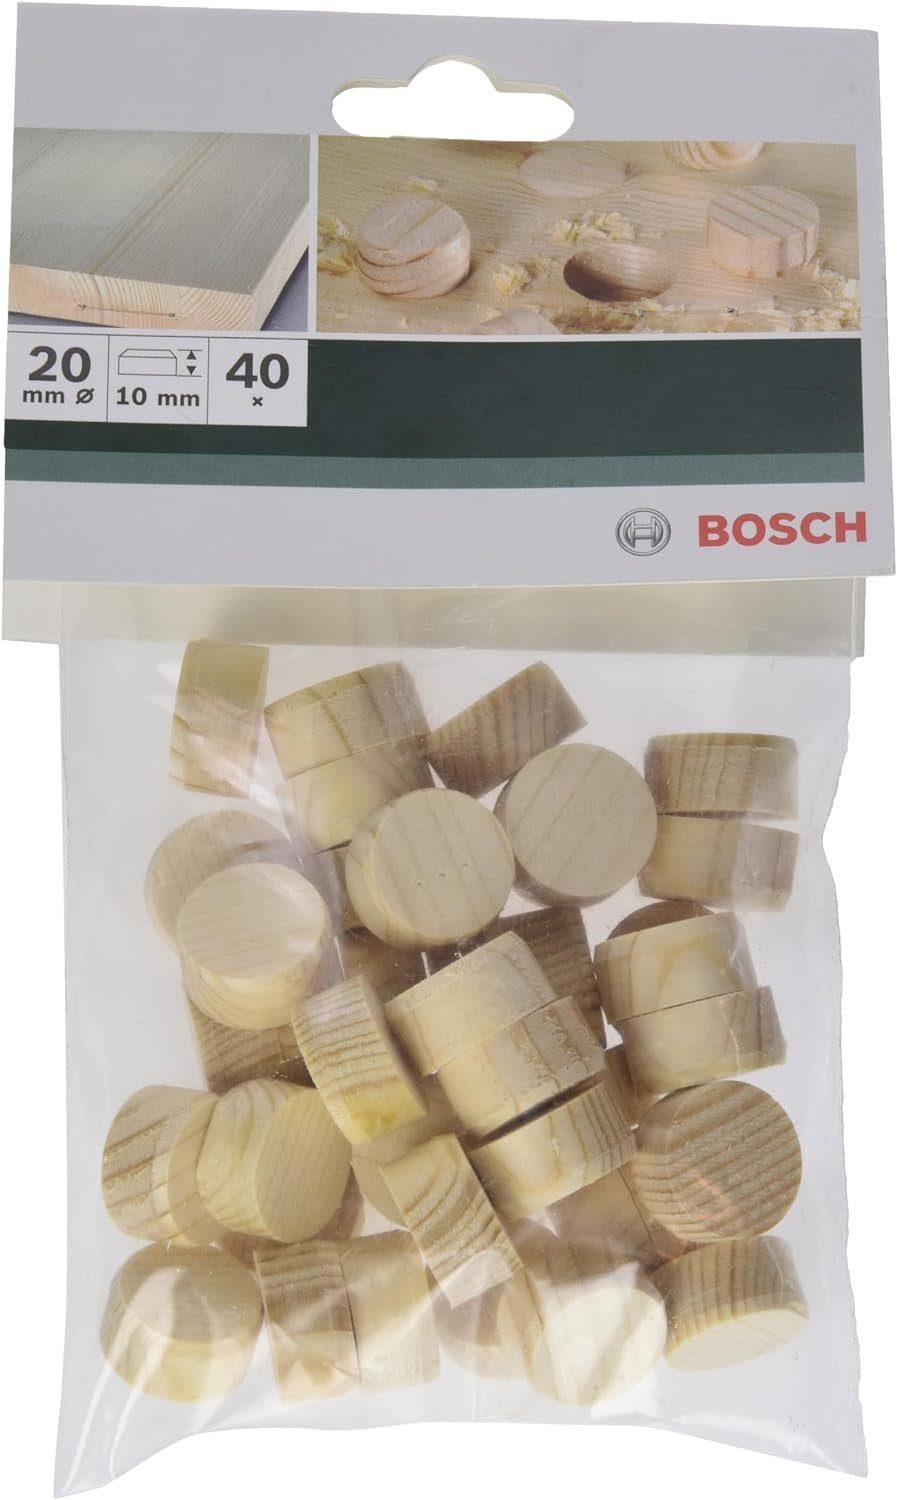 mm Stk Holzzapfen 20 Bosch BOSCH Ø 40 Bohrfutter